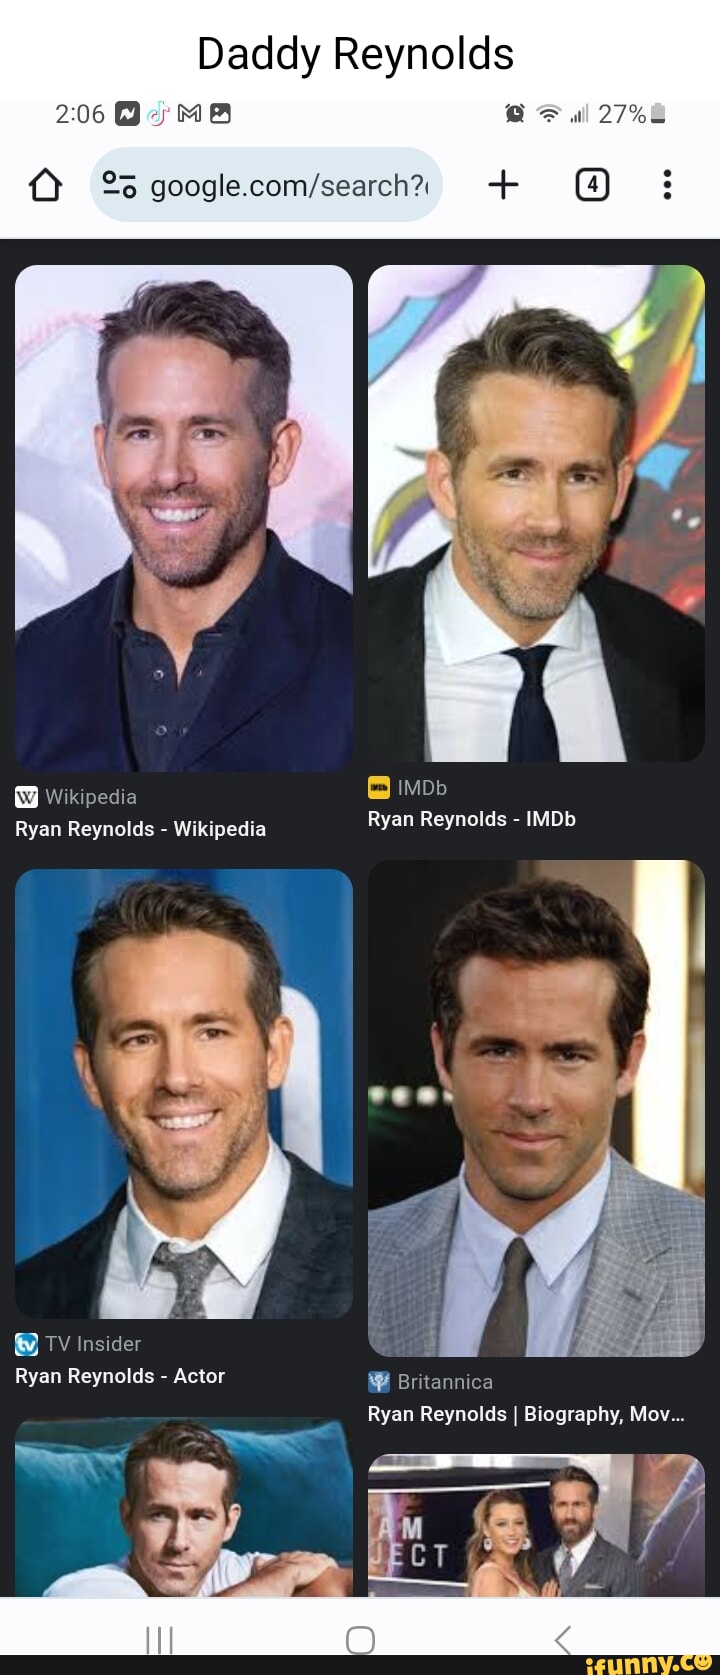 Ryan Reynolds - Biography